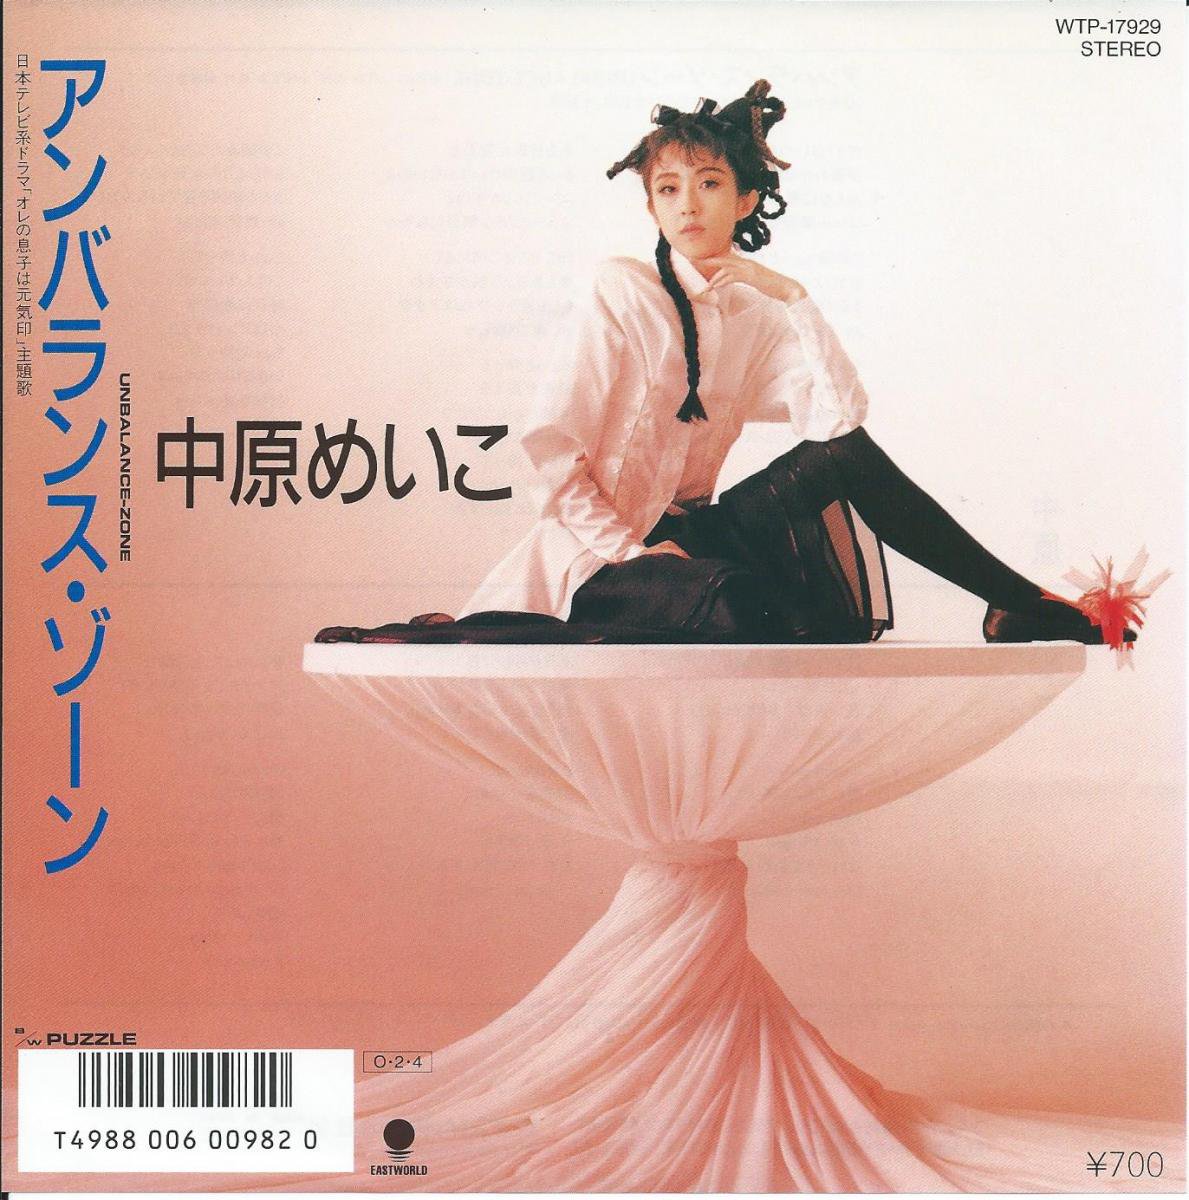 中原めいこ Meiko Nakahara アンバランス ゾーン Unbalance Zone パズル Puzzle 7 Hip Tank Records